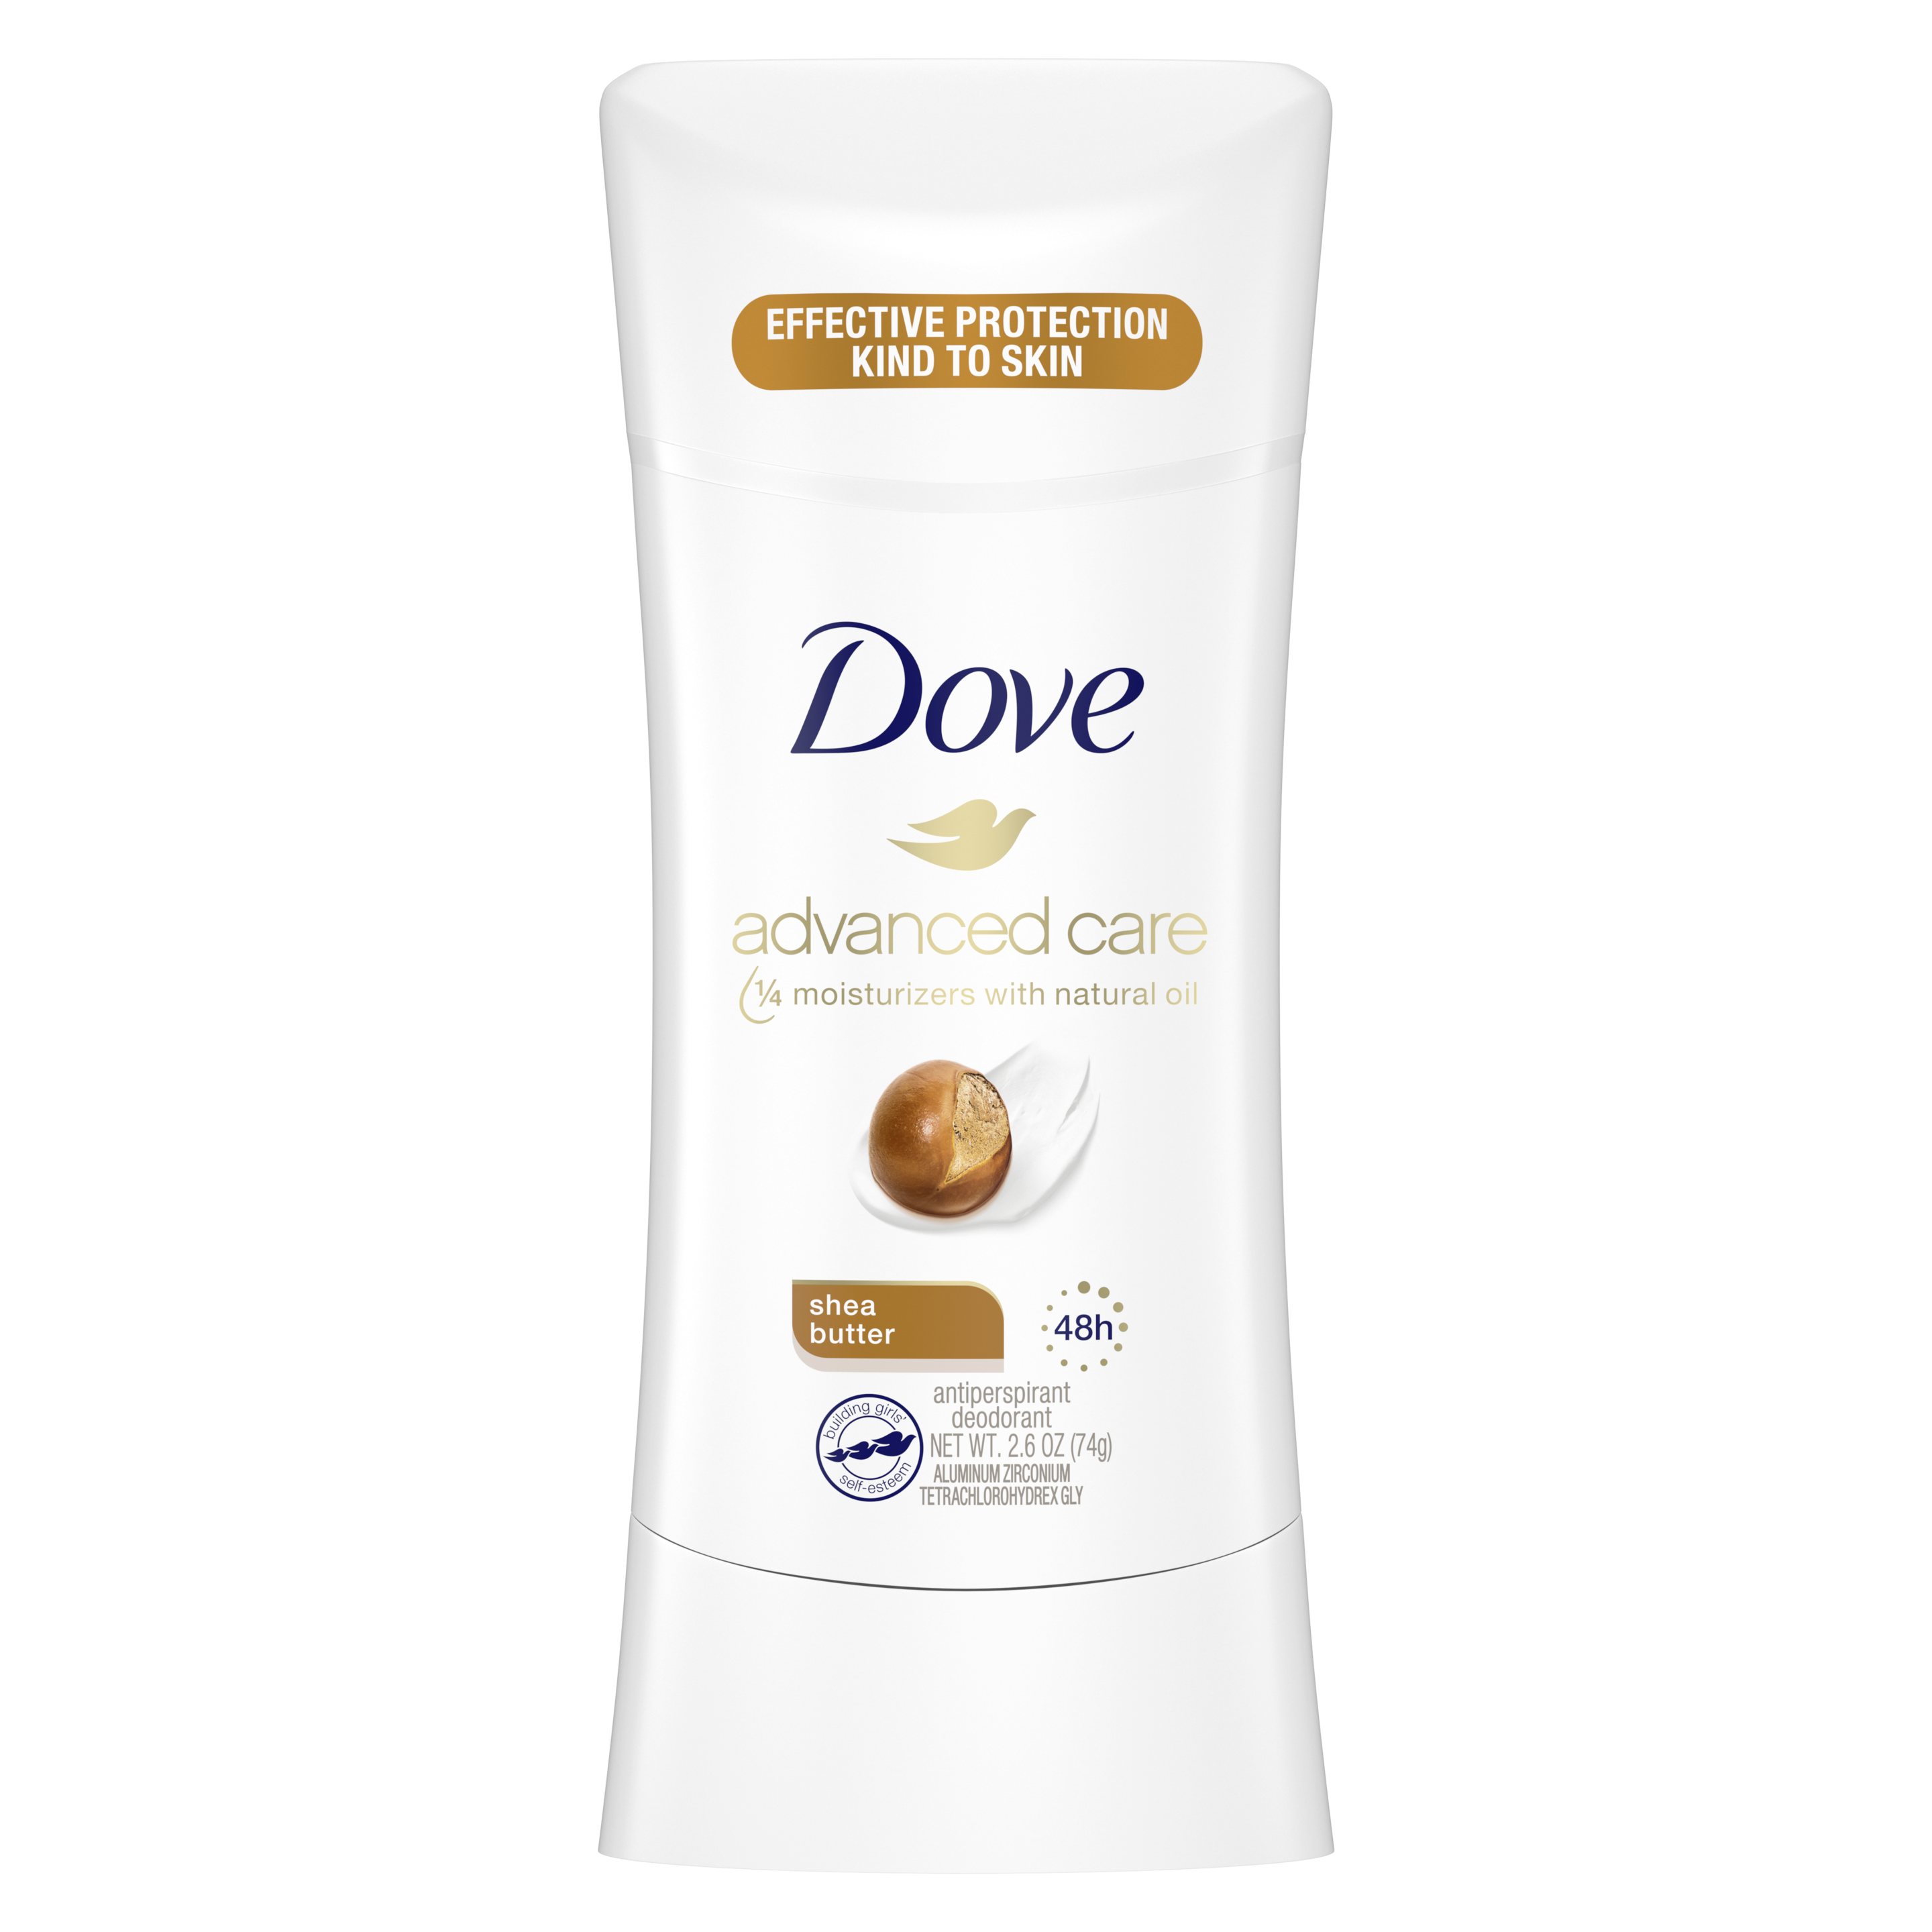 Dove Advanced Care Shea Butter Antiperspirant 2.6 oz